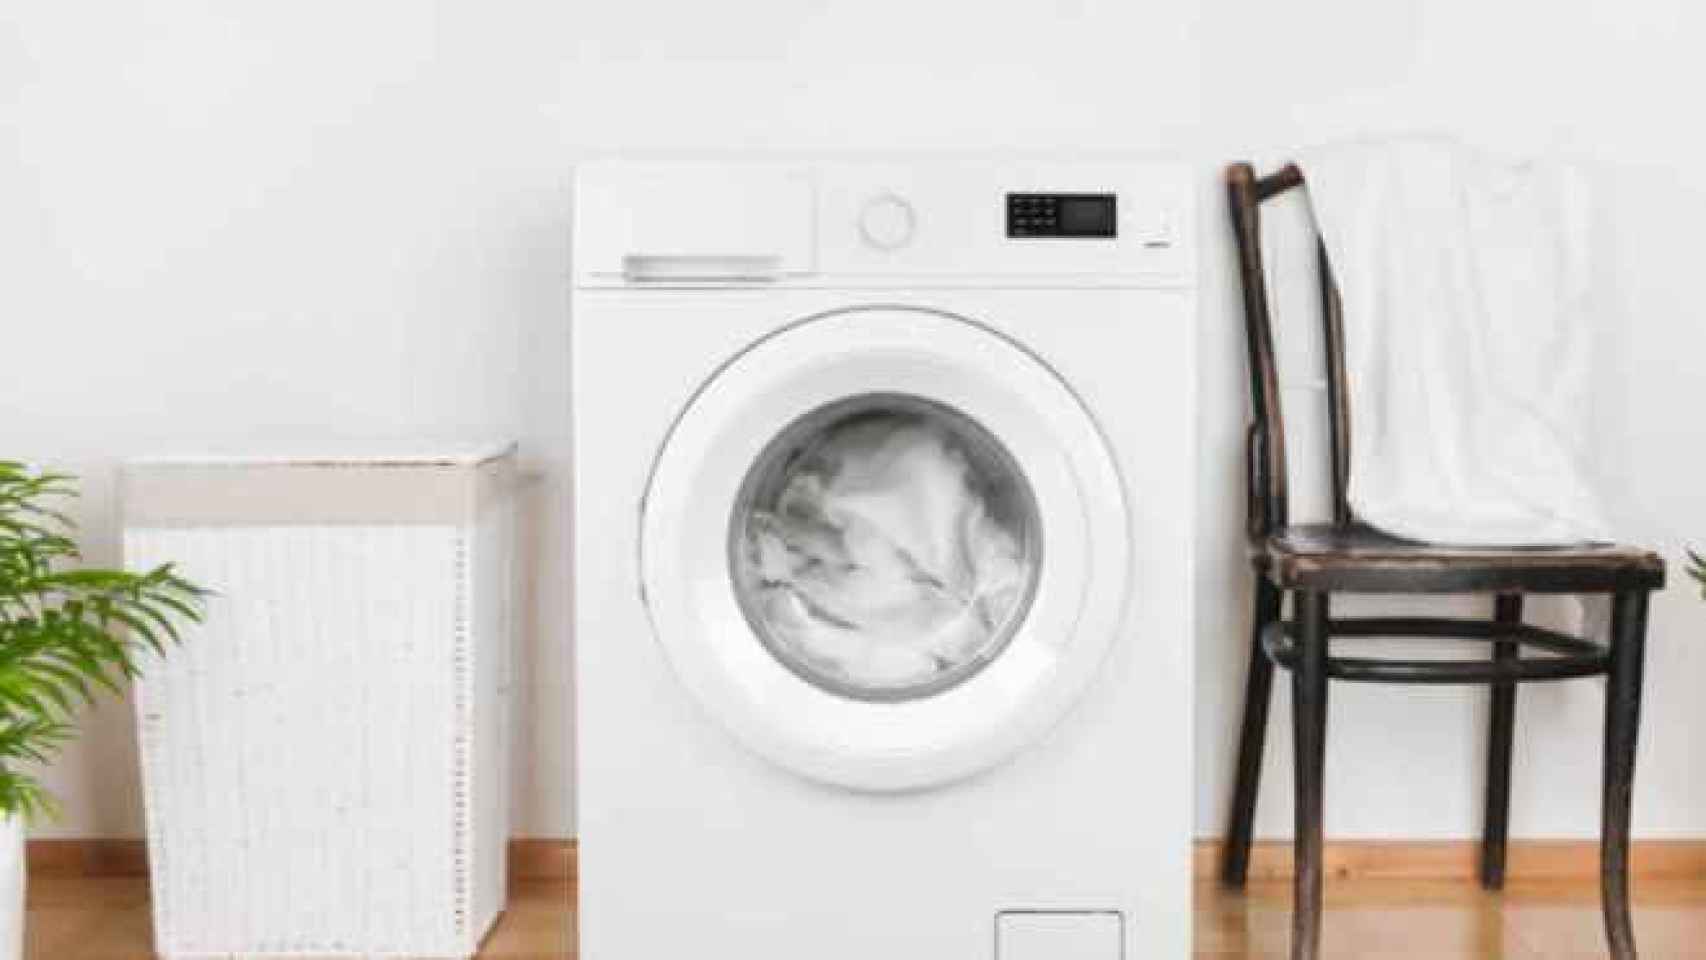 Provisional Labor Negar La peor lavadora que puedes comprar, según la OCU: cuesta 339 euros